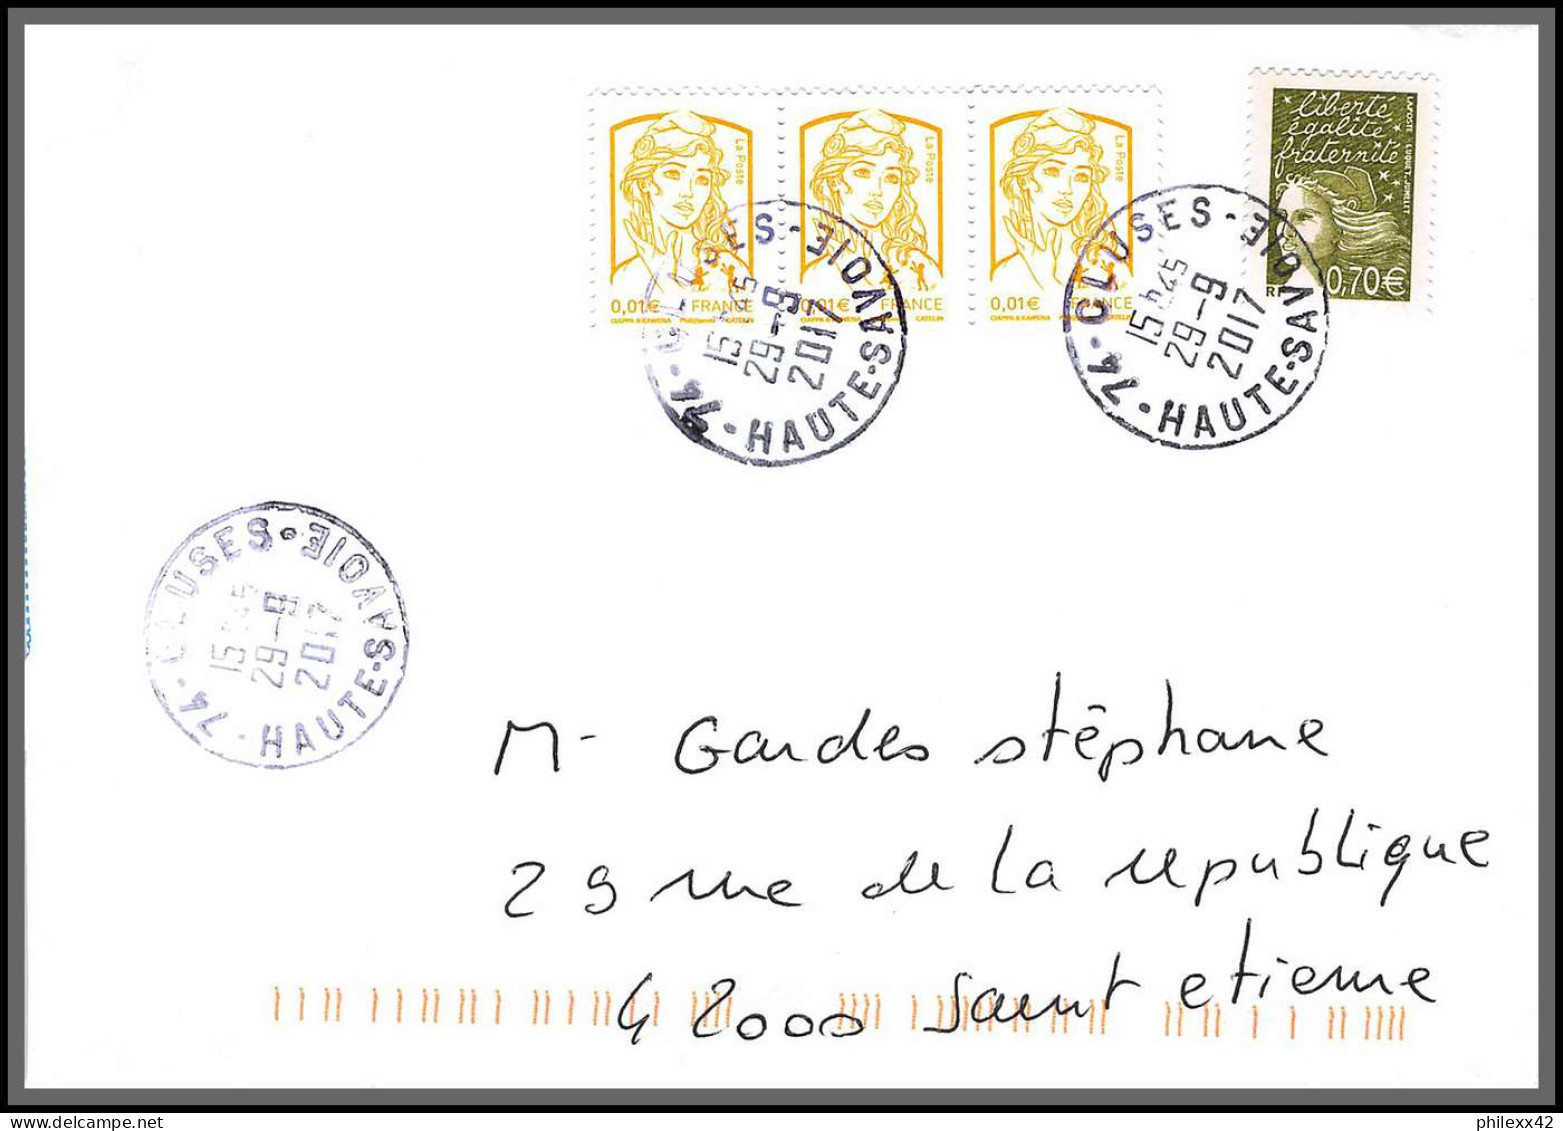 95918 - lot de 15 courriers lettres enveloppes de l'année 2017 divers affranchissements en EUROS